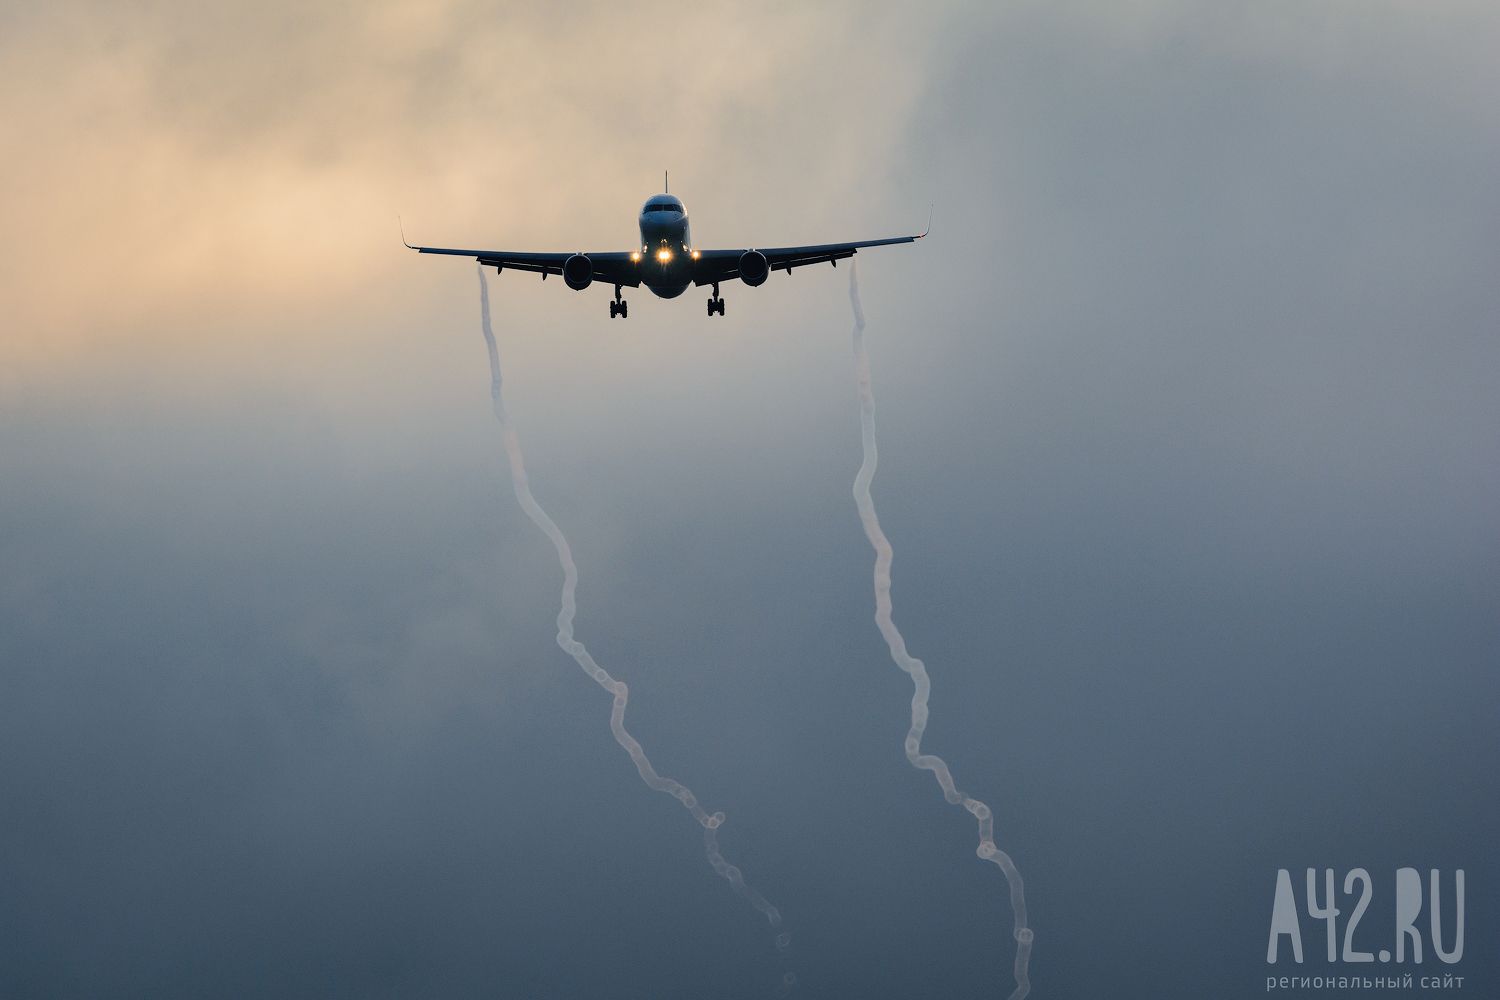 Несколько авиарейсов задержали в аэропорту Новокузнецка из-за тумана